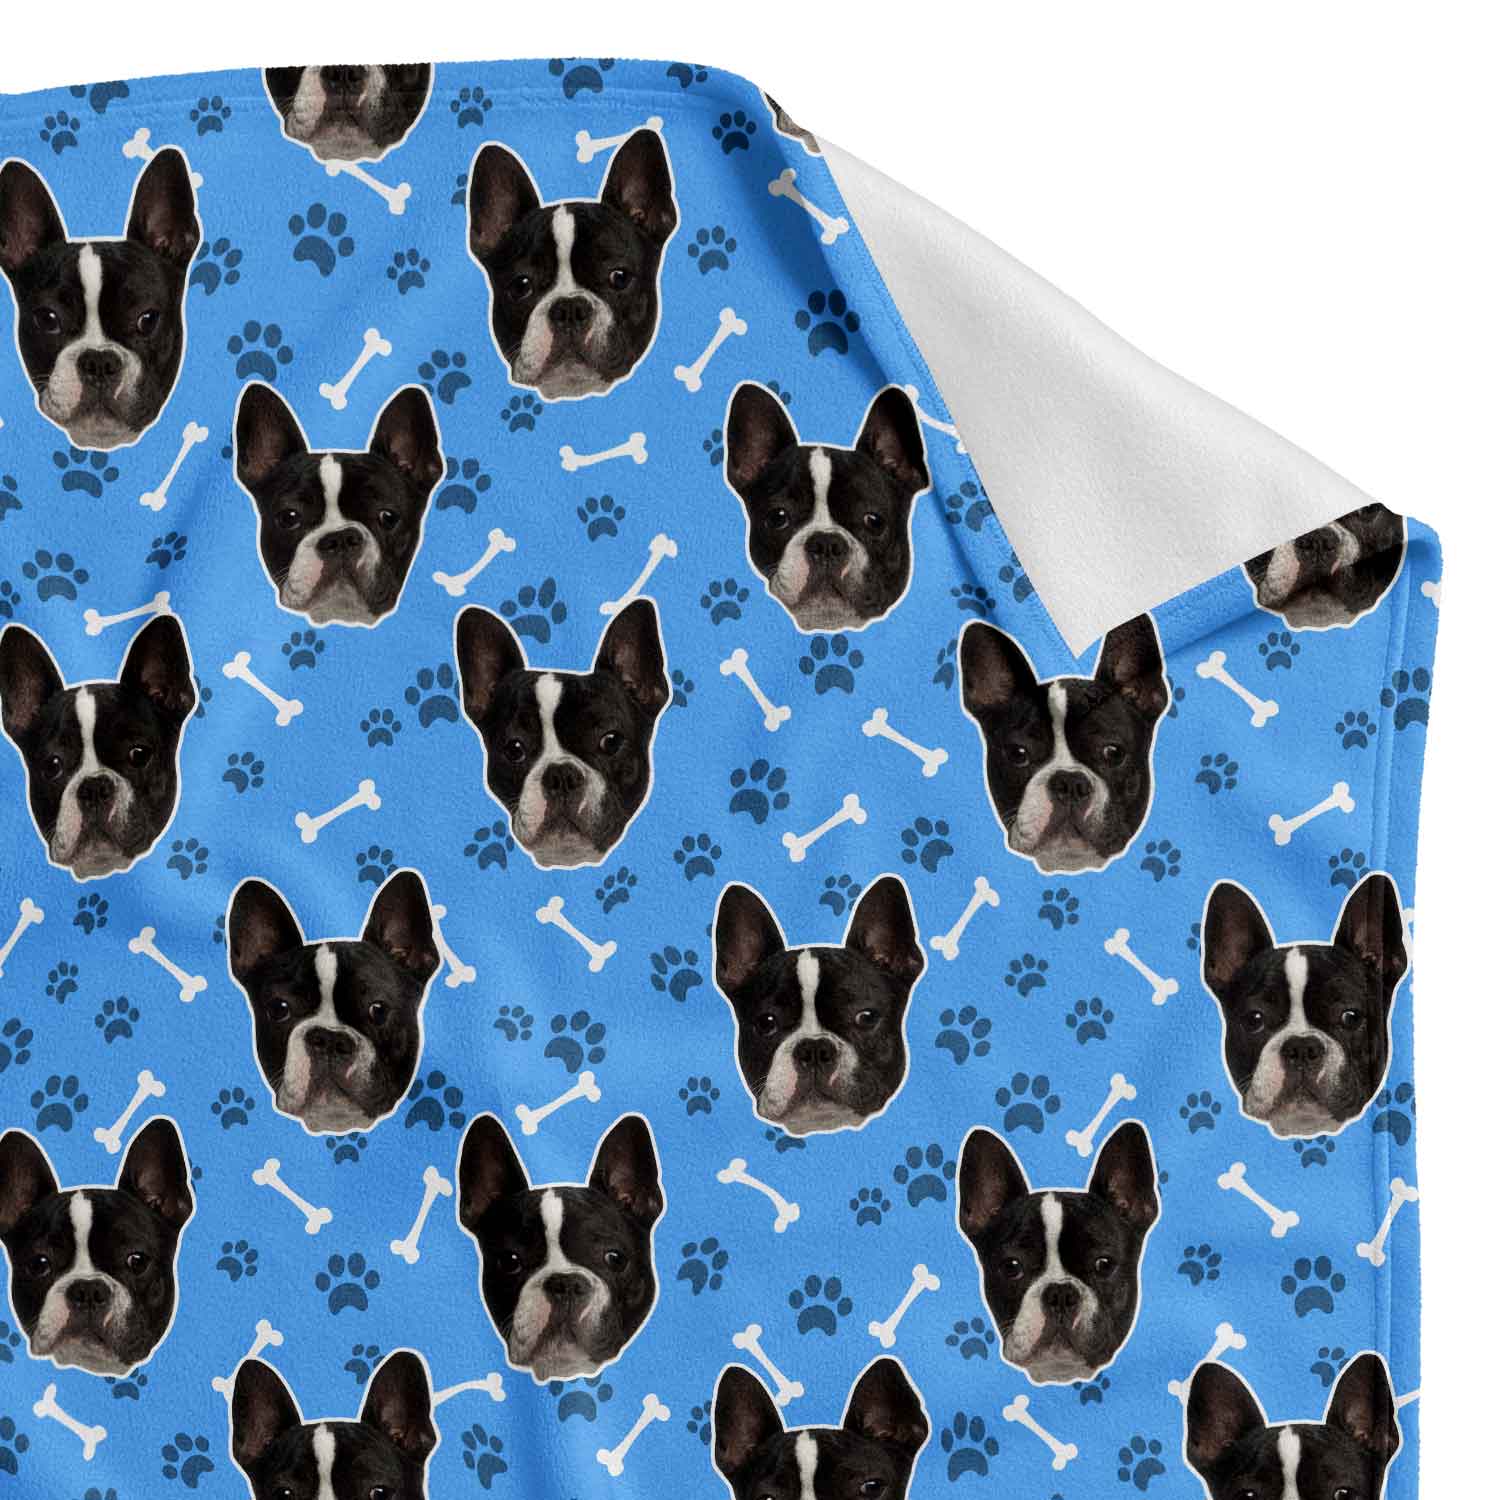 The Dogsy Dog Blanket